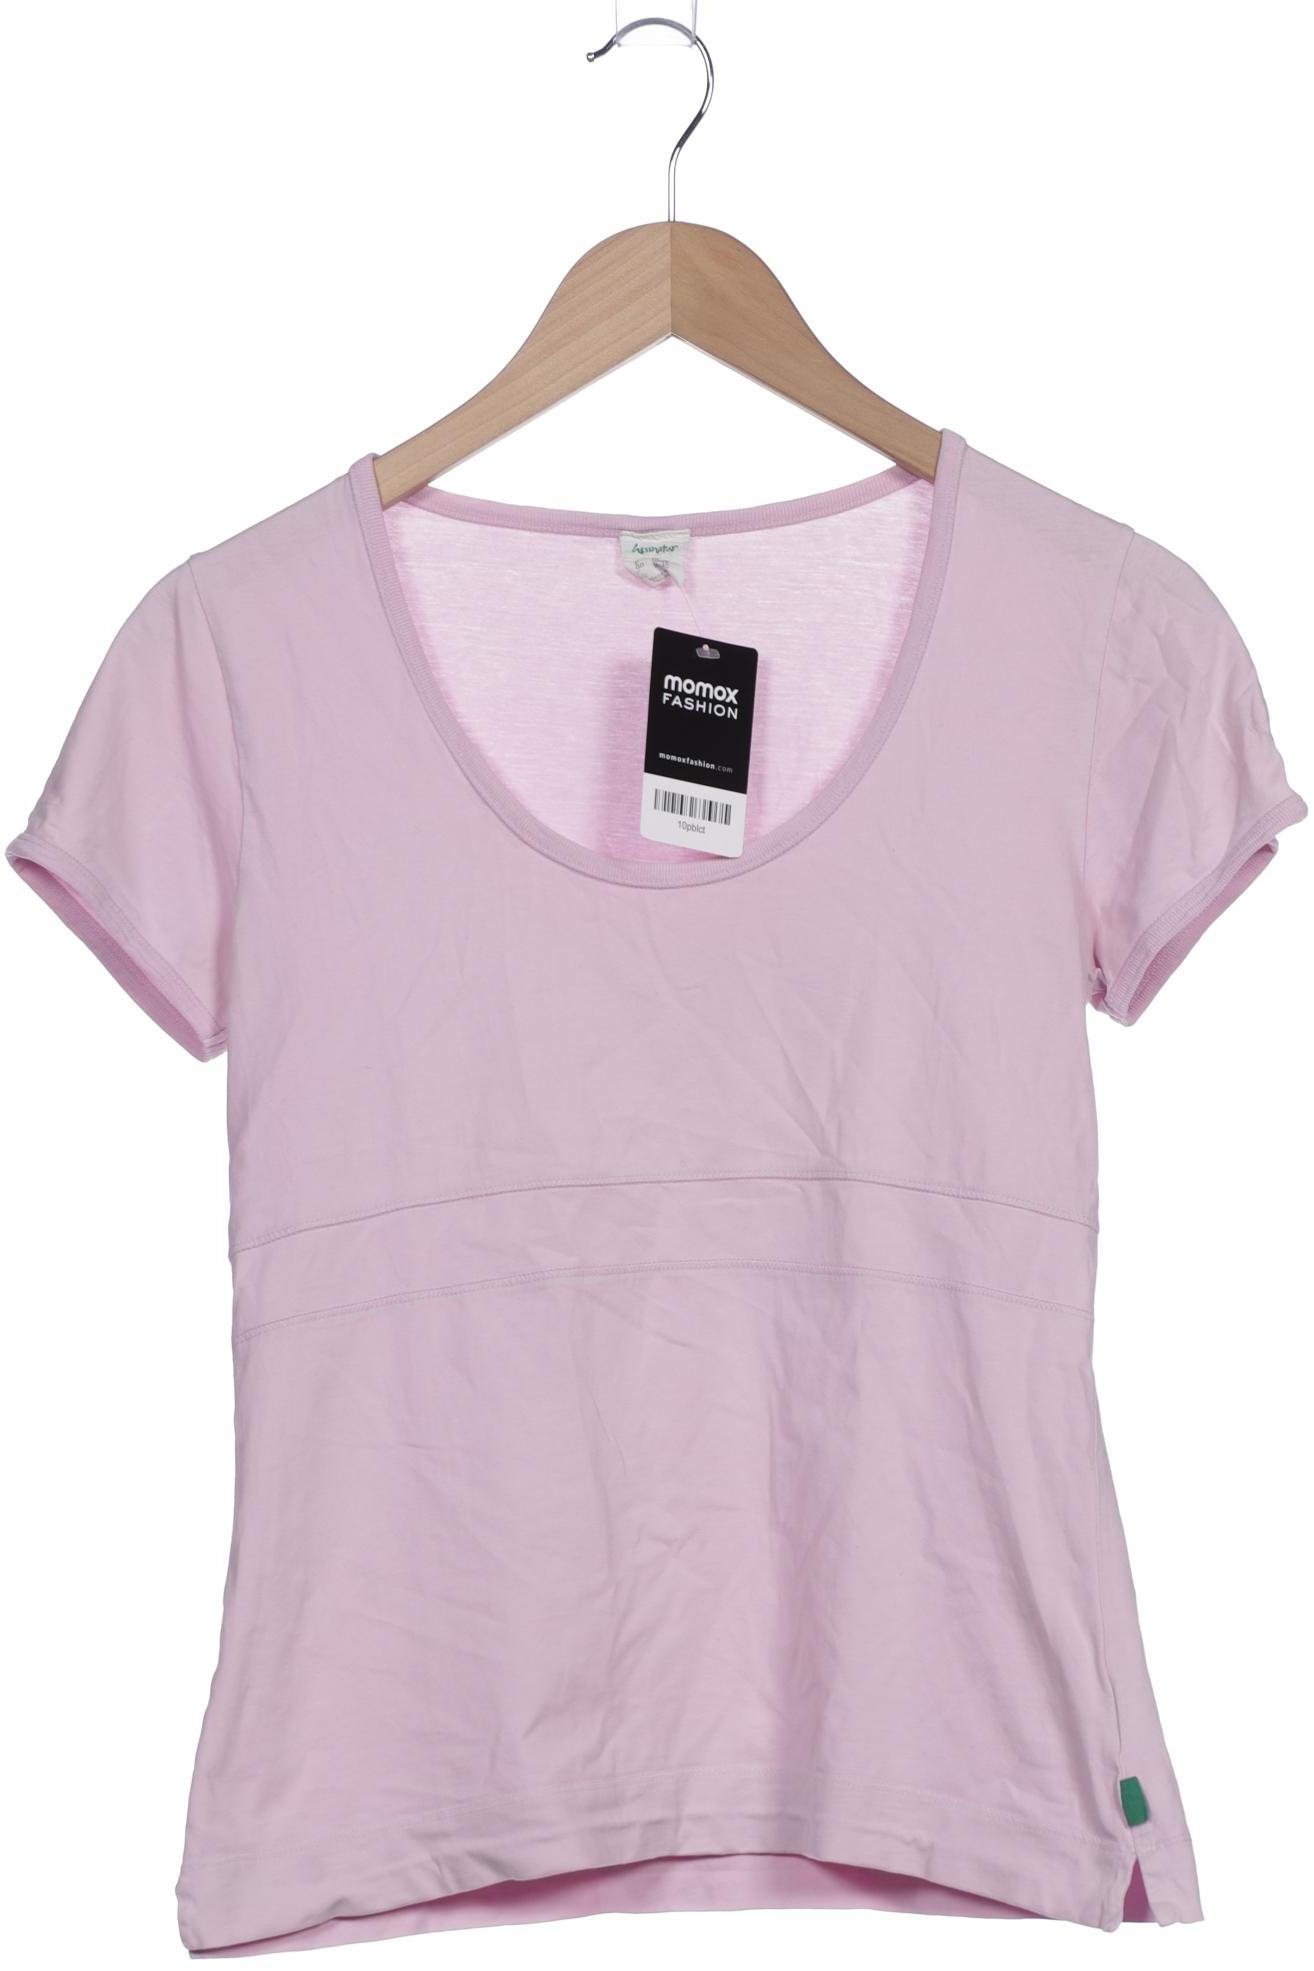 hessnatur Damen T-Shirt, pink, Gr. 36 von hessnatur